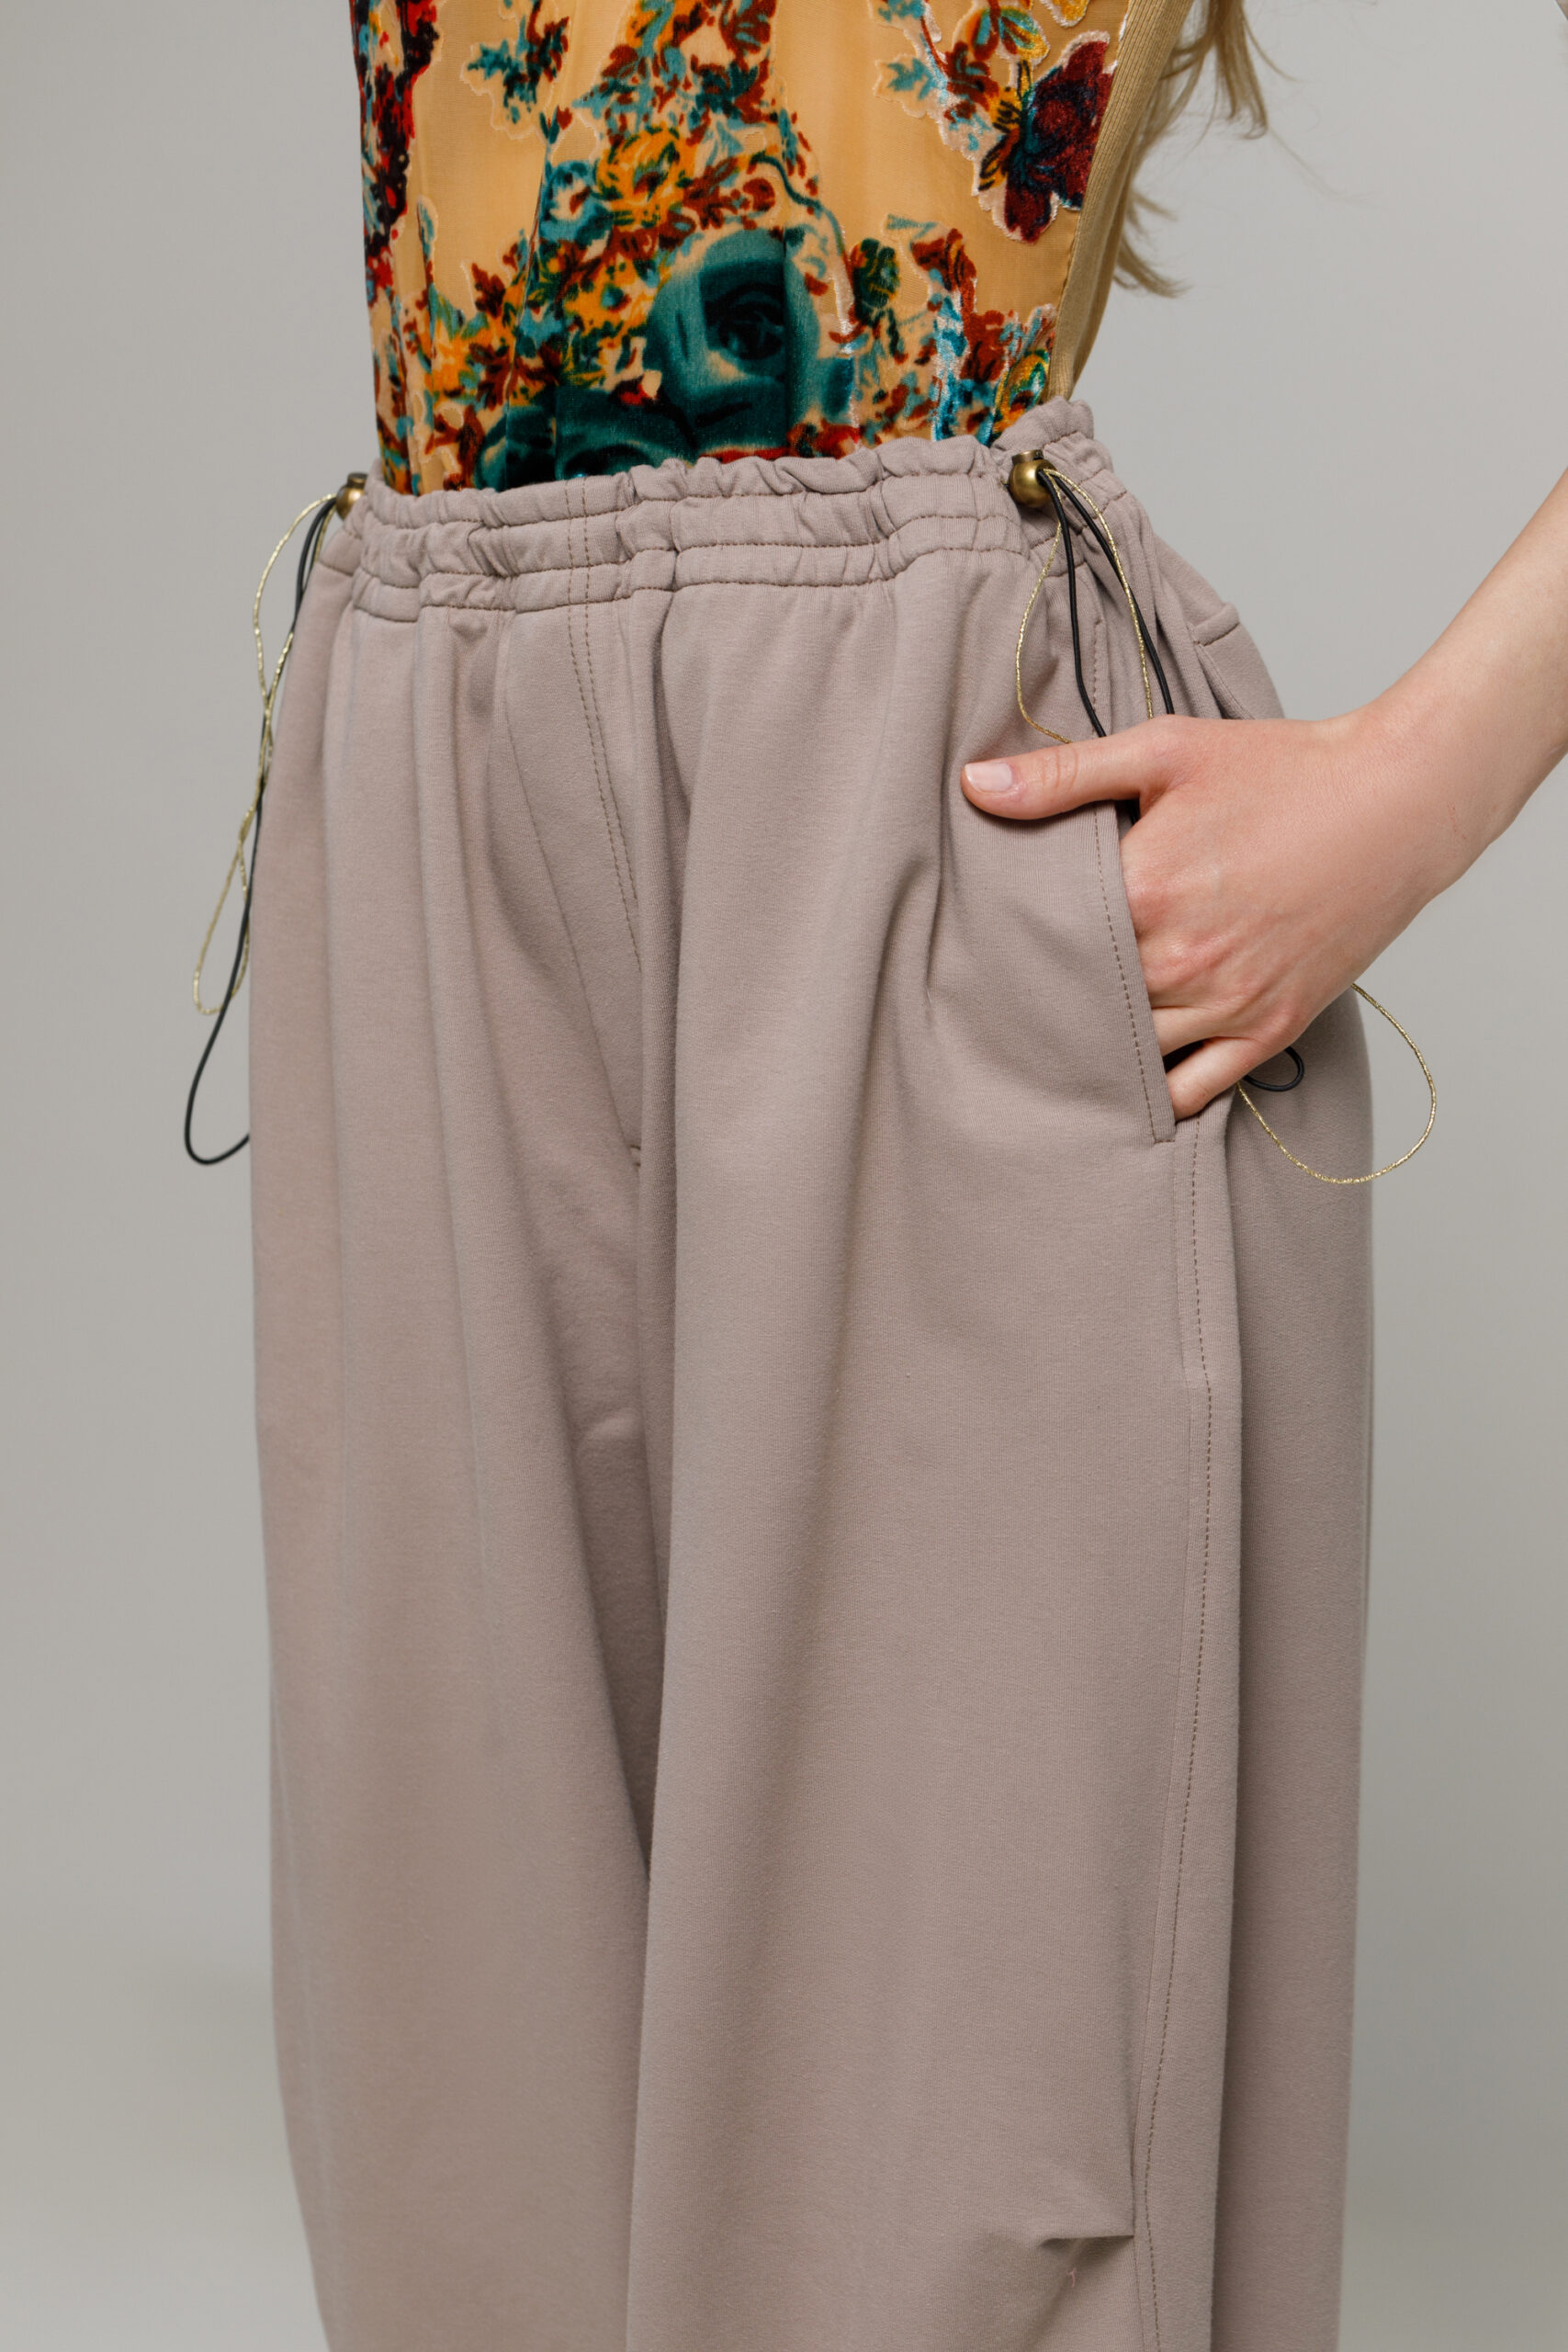 Pantalon WAN grej din felpa Oversize. Materiale naturale, design unicat, cu broderie si aplicatii handmade